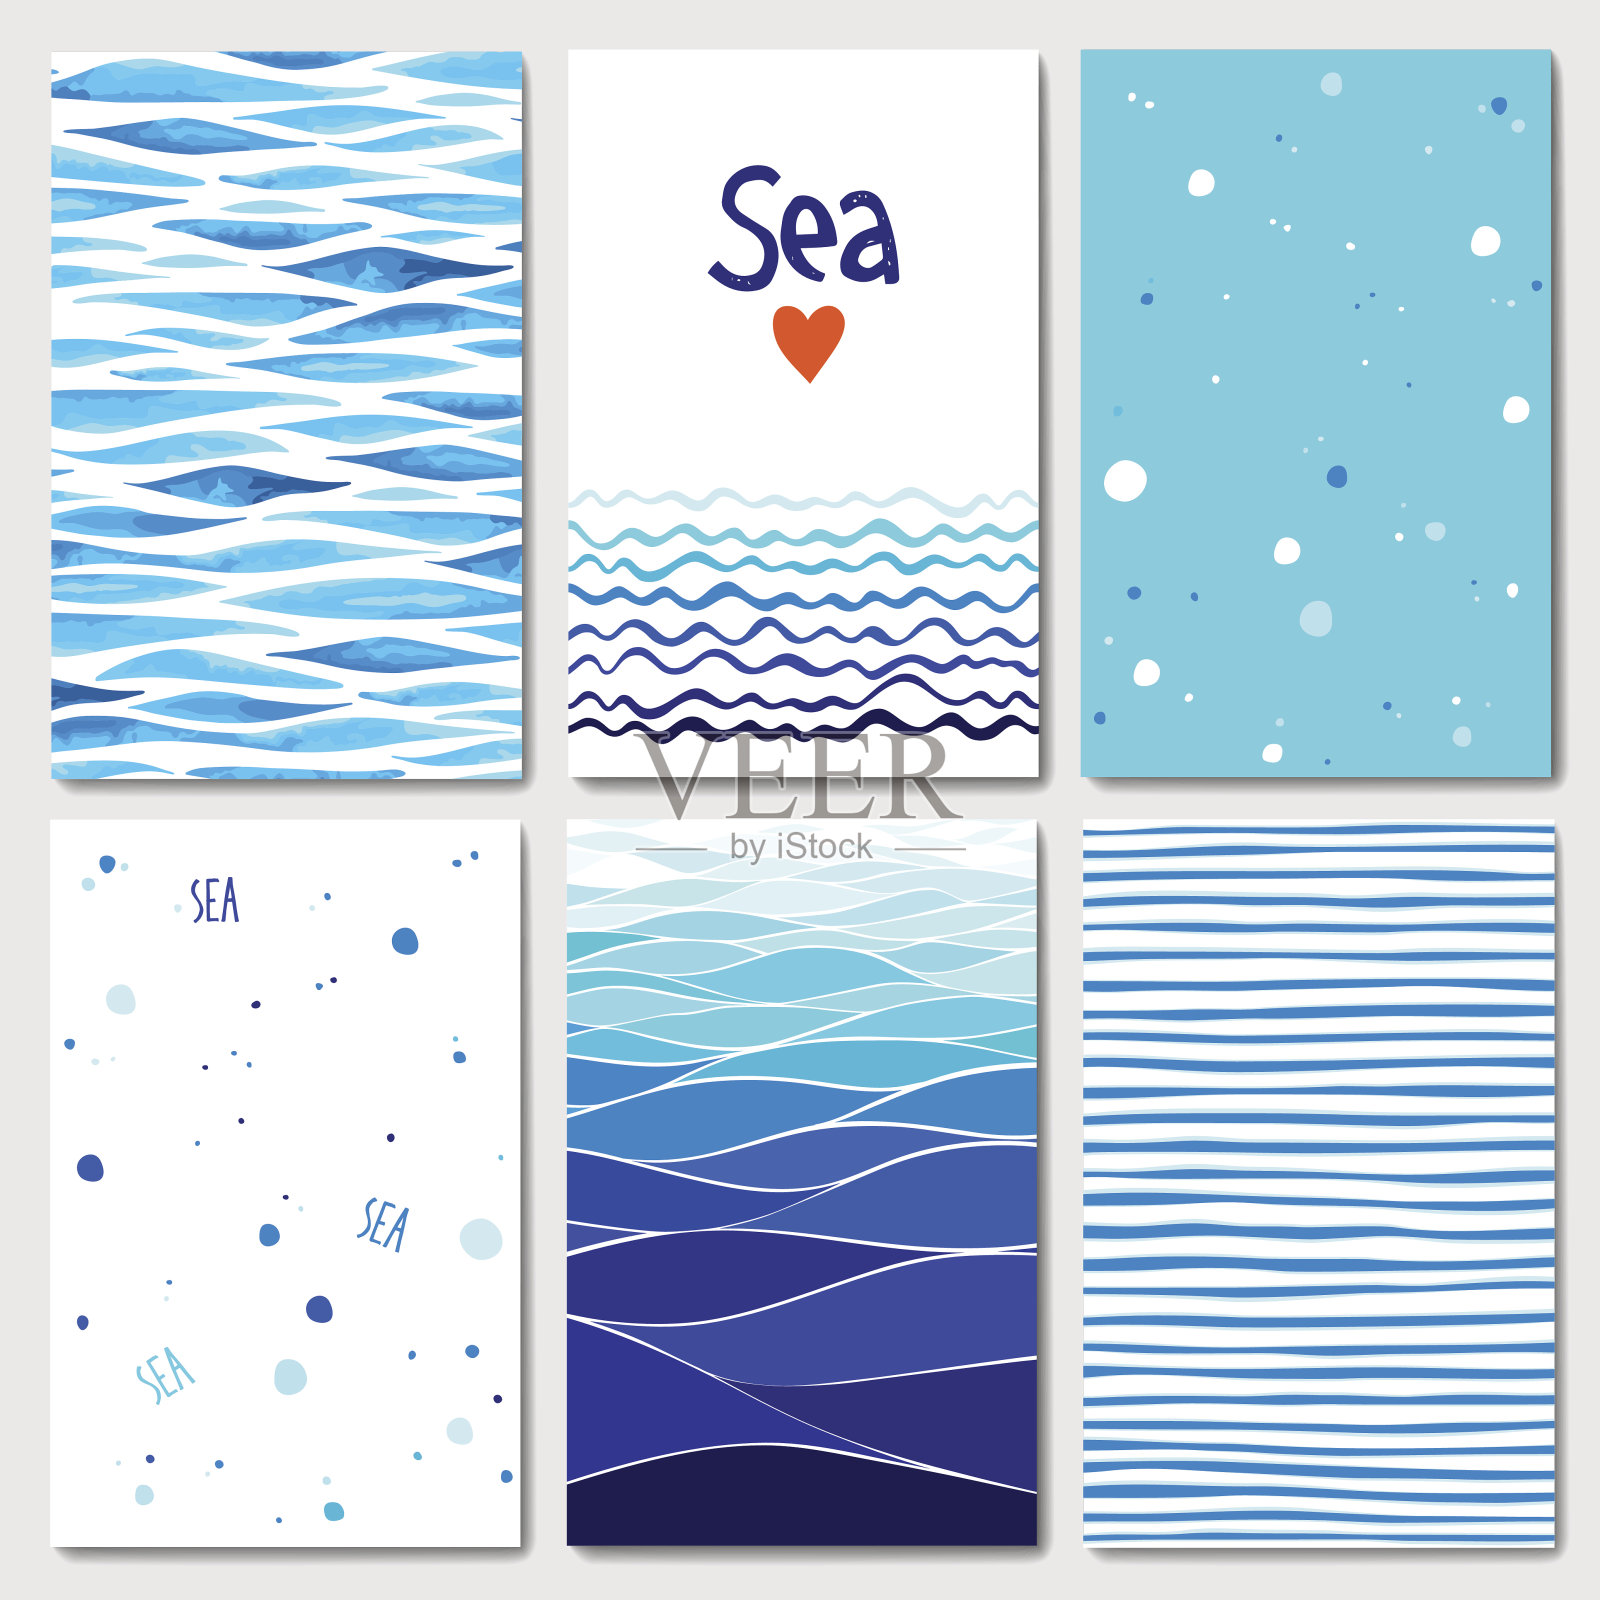 一套6张以海洋为背景的卡片模板插画图片素材